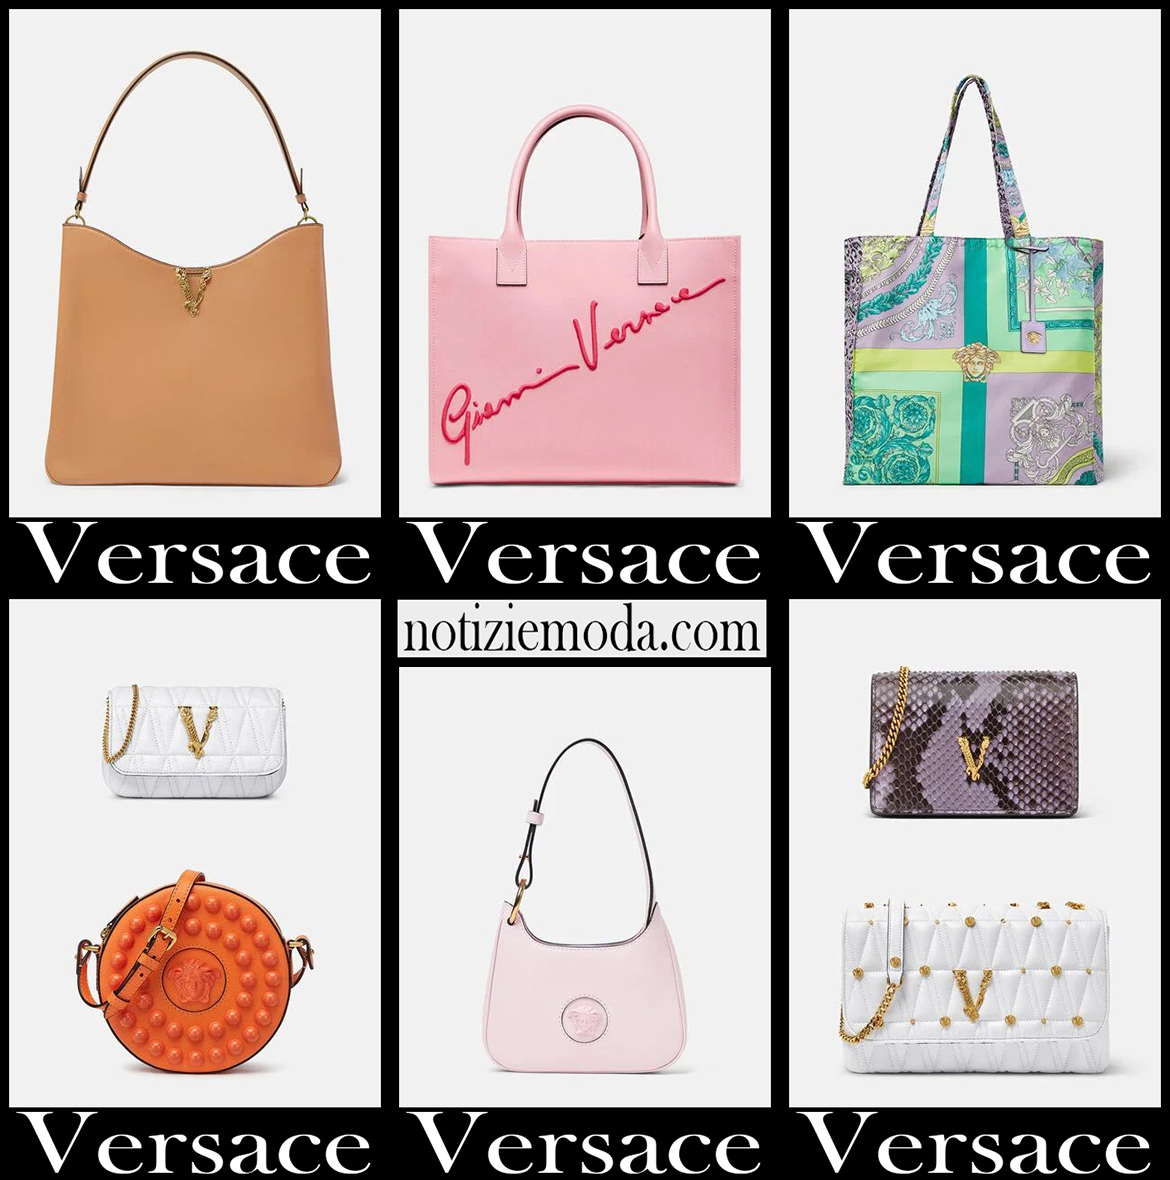 Nuovi arrivi borse Versace 2021 accessori moda donna